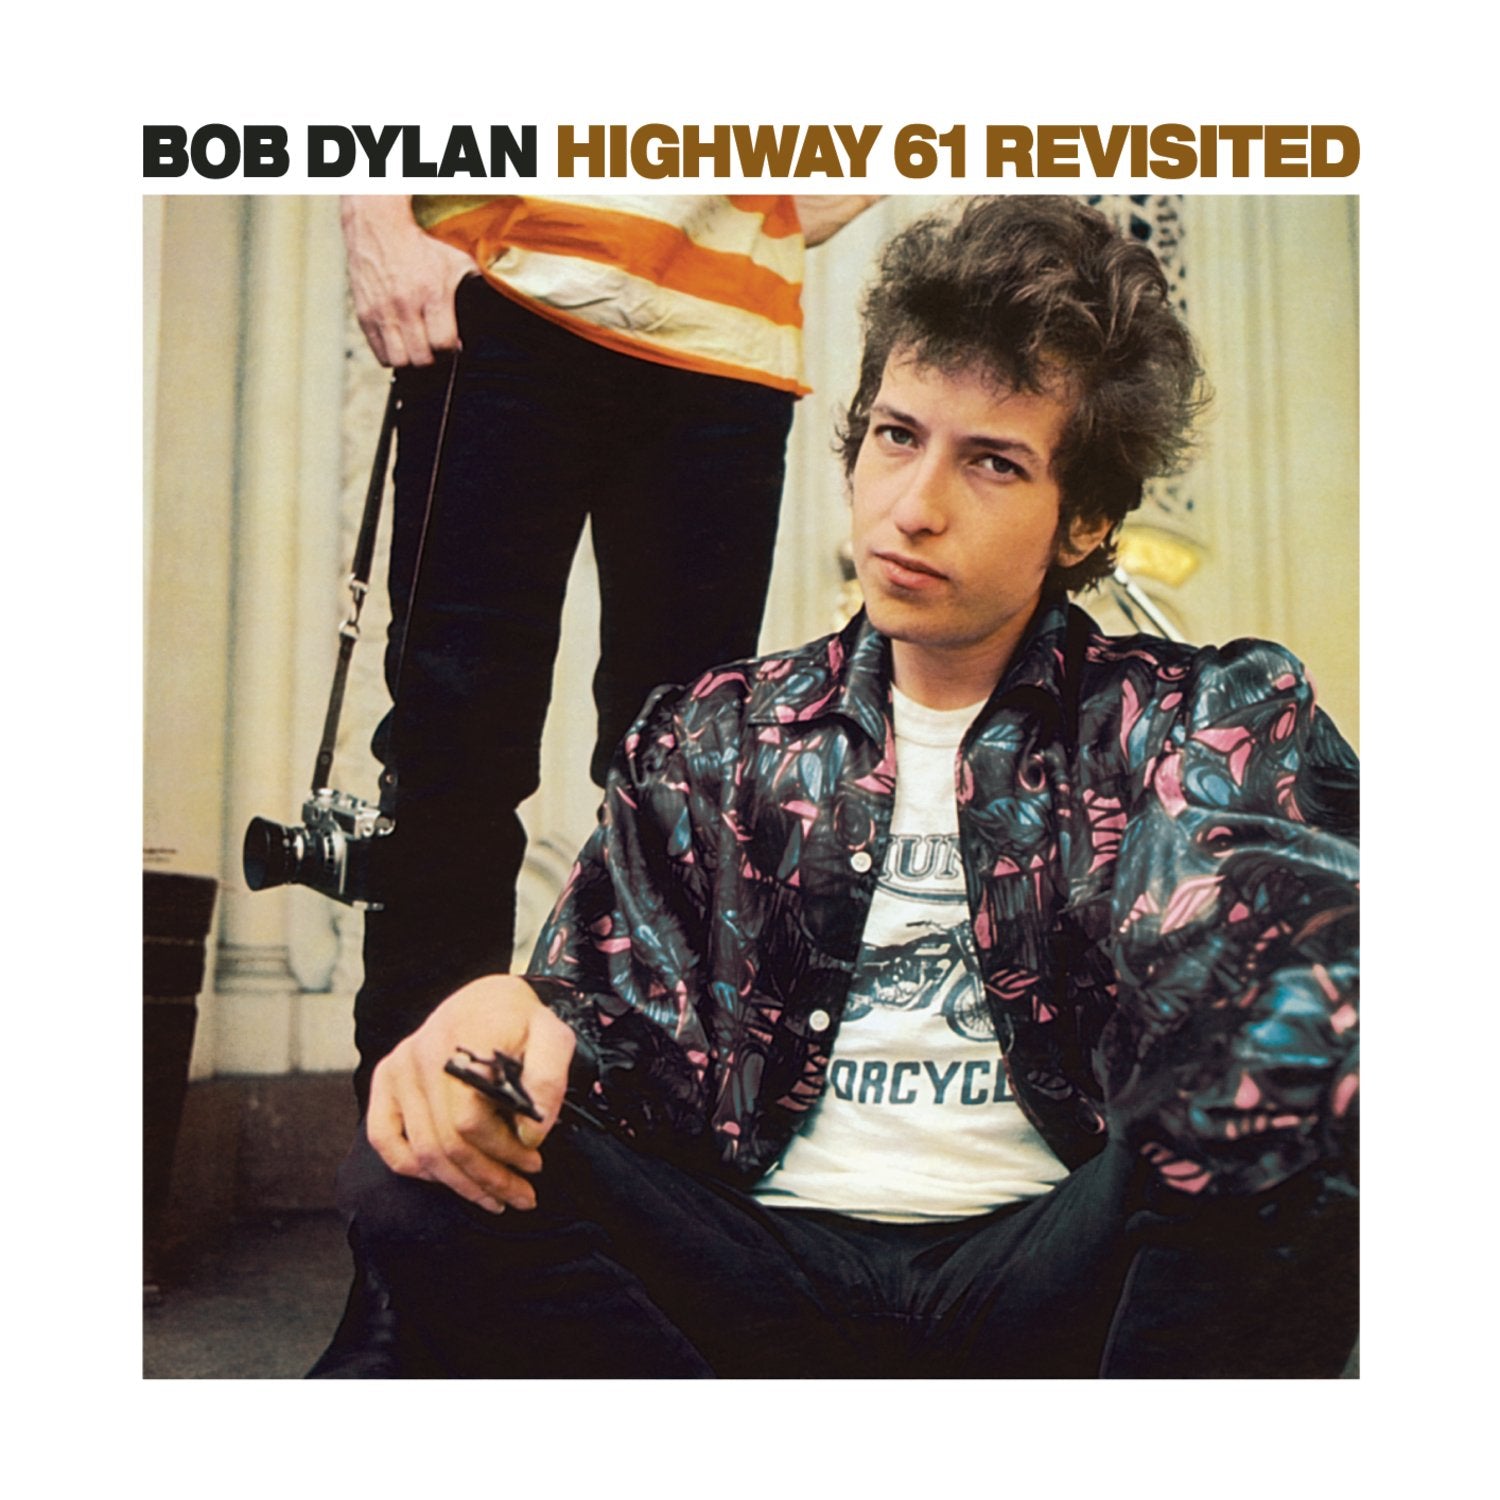 BOB DYLAN - Highway 61 Revisited - LP - 180g Vinyl